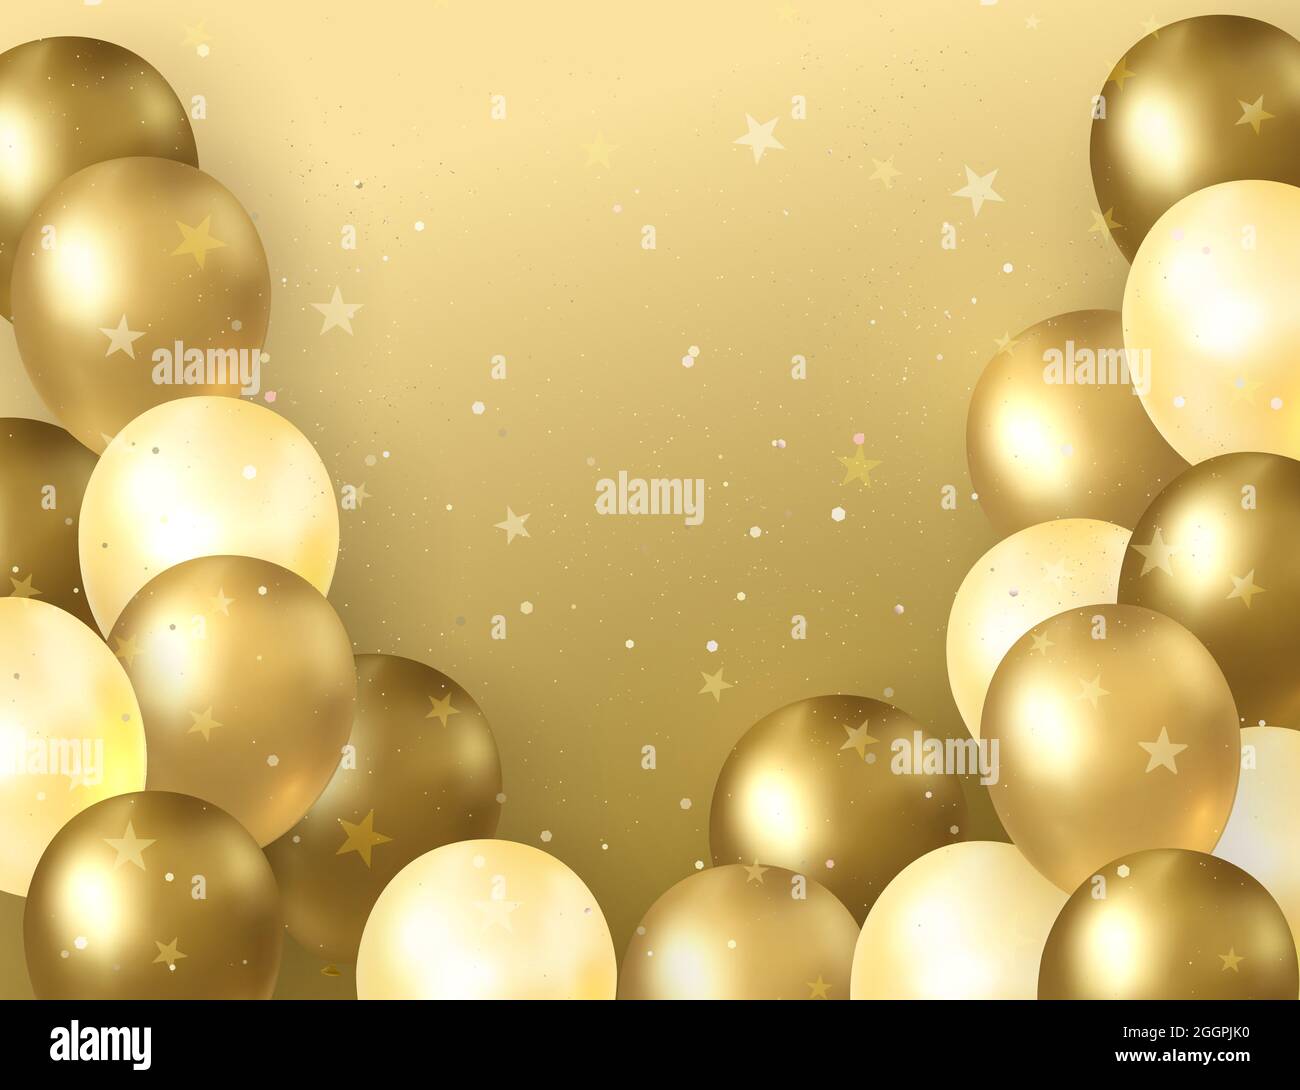 Bạn yêu thích màu vàng kim loại, và muốn sử dụng những quả bóng này để trang trí cho bữa tiệc sinh nhật đặc biệt của mình? Hãy xem ngay hình ảnh quả bóng vàng óng ánh được khoe trên đó nhé!